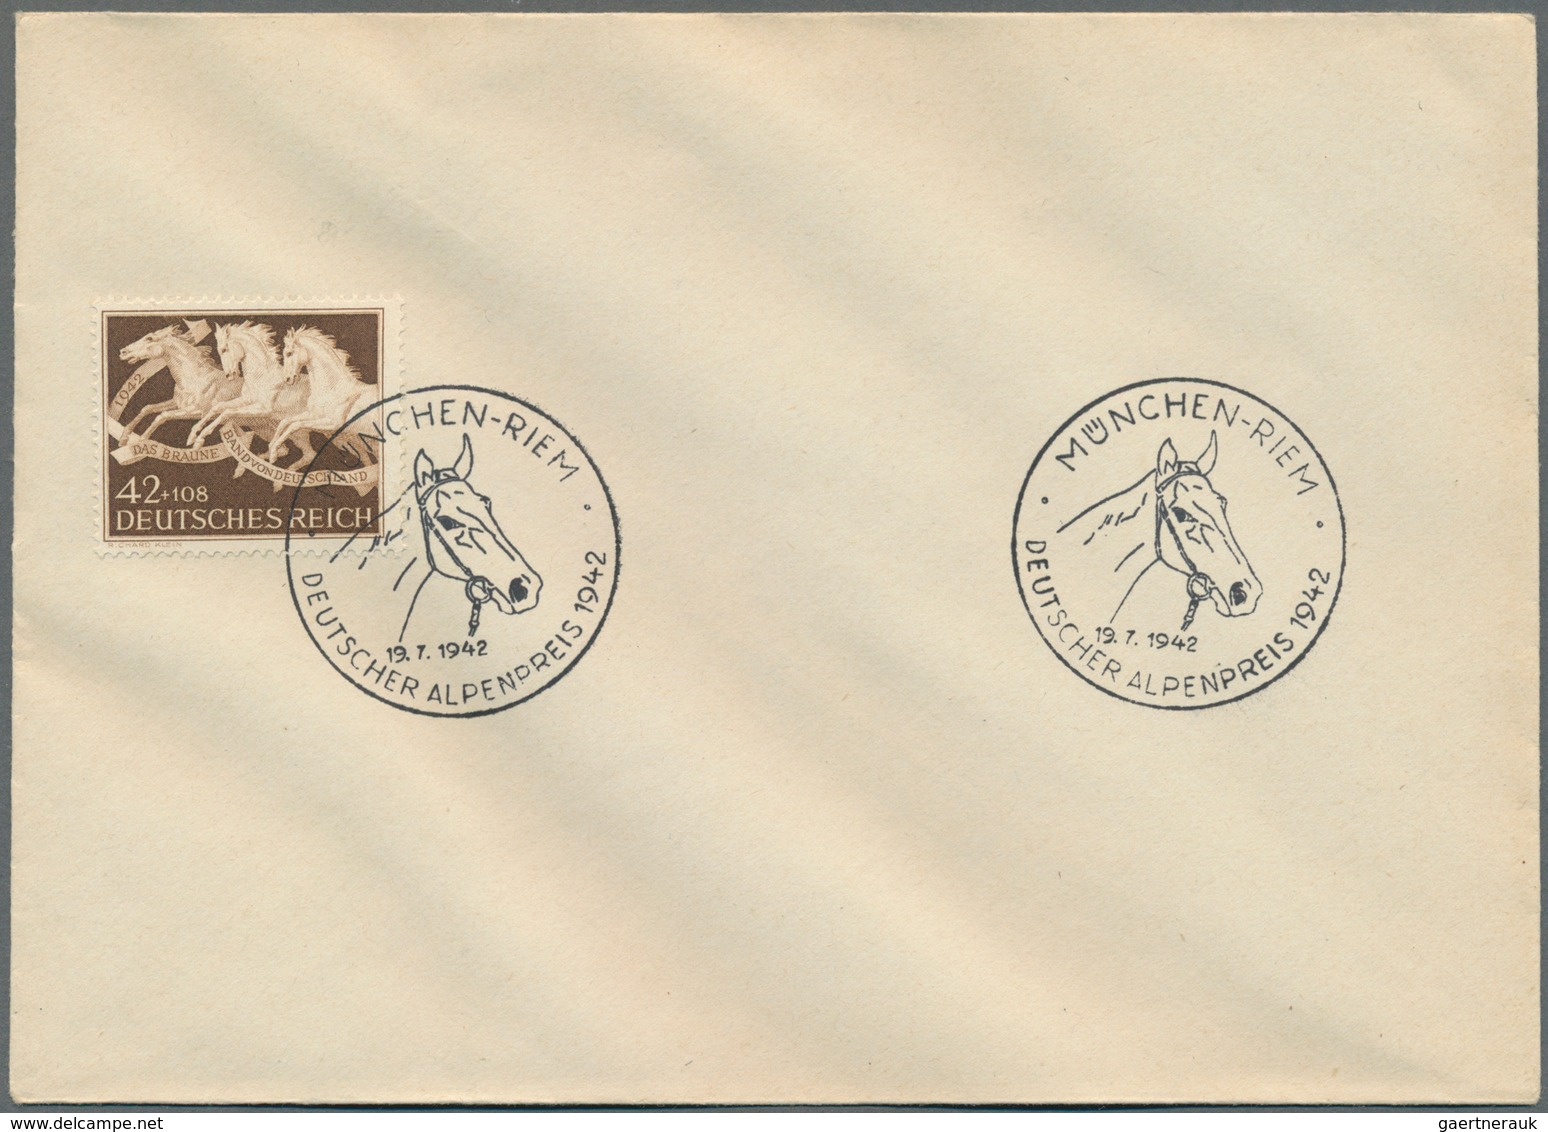 Deutschland: 1870/1980 (ca.), vielseitiger Bestand von ca. 185 Briefen/Karten/Ganzsachen, dabei Kolo